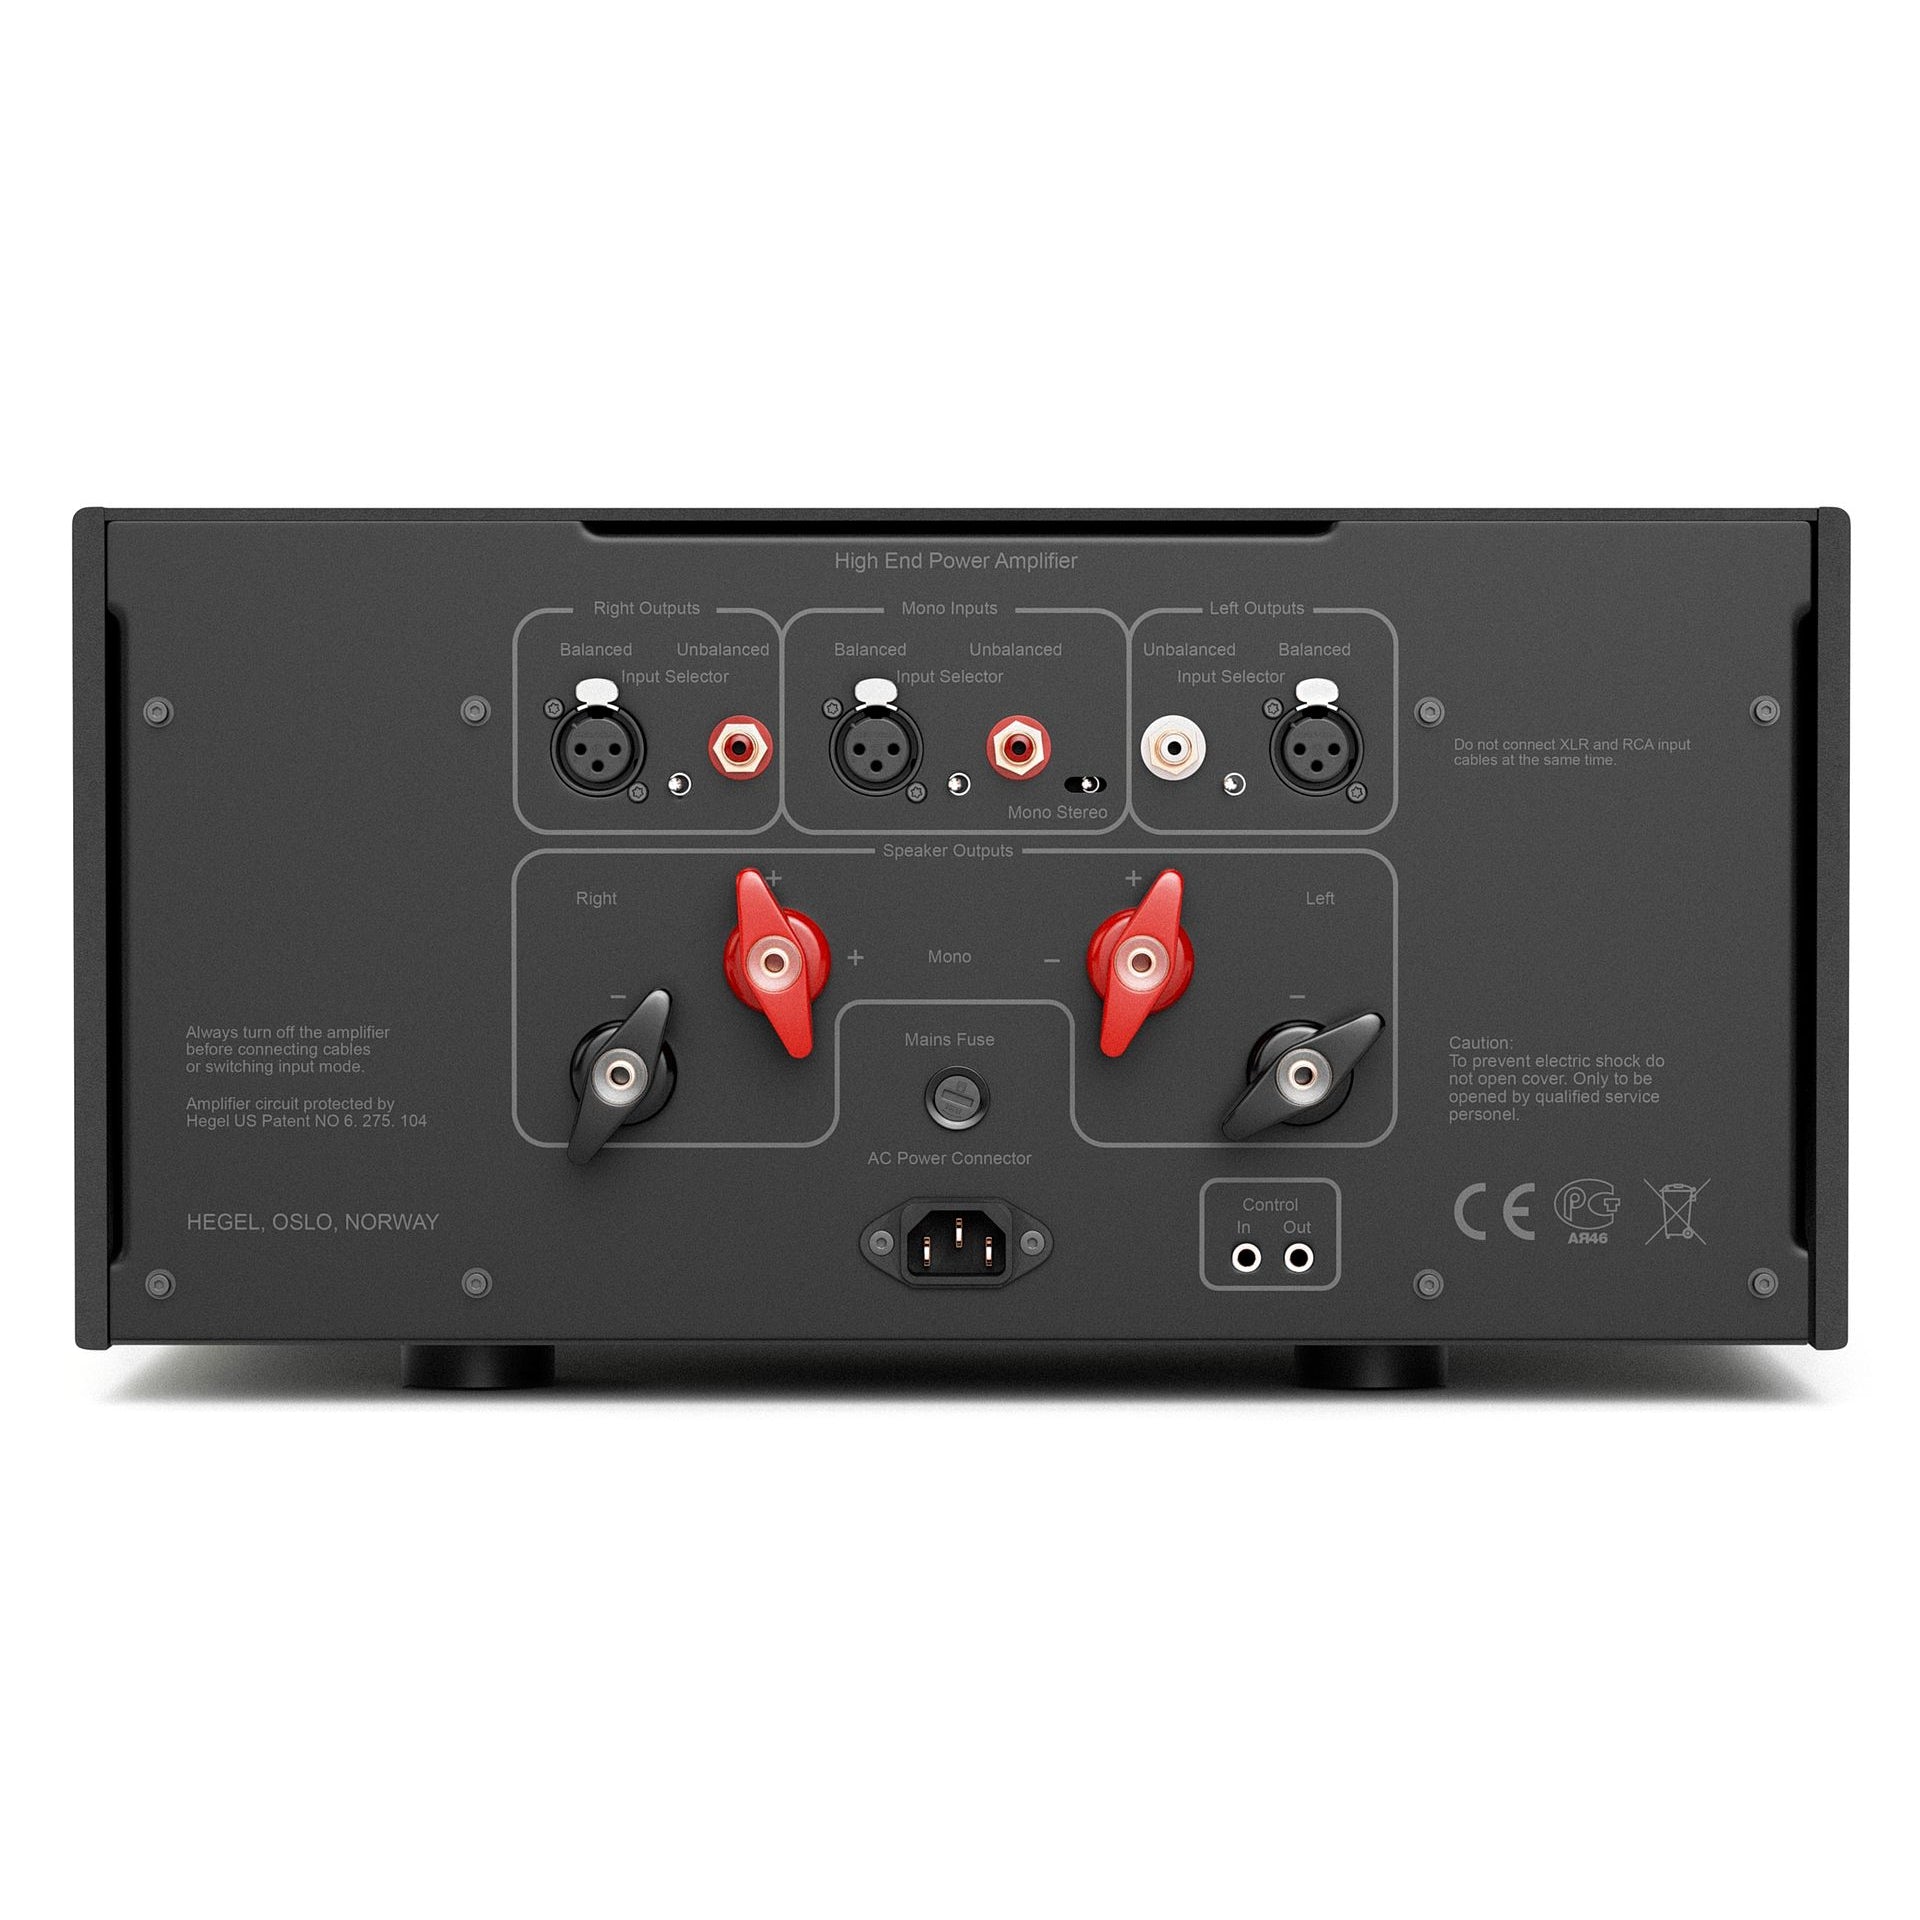 Hegel - H30A (2 x 1100 Watts) - Amplifier Australia